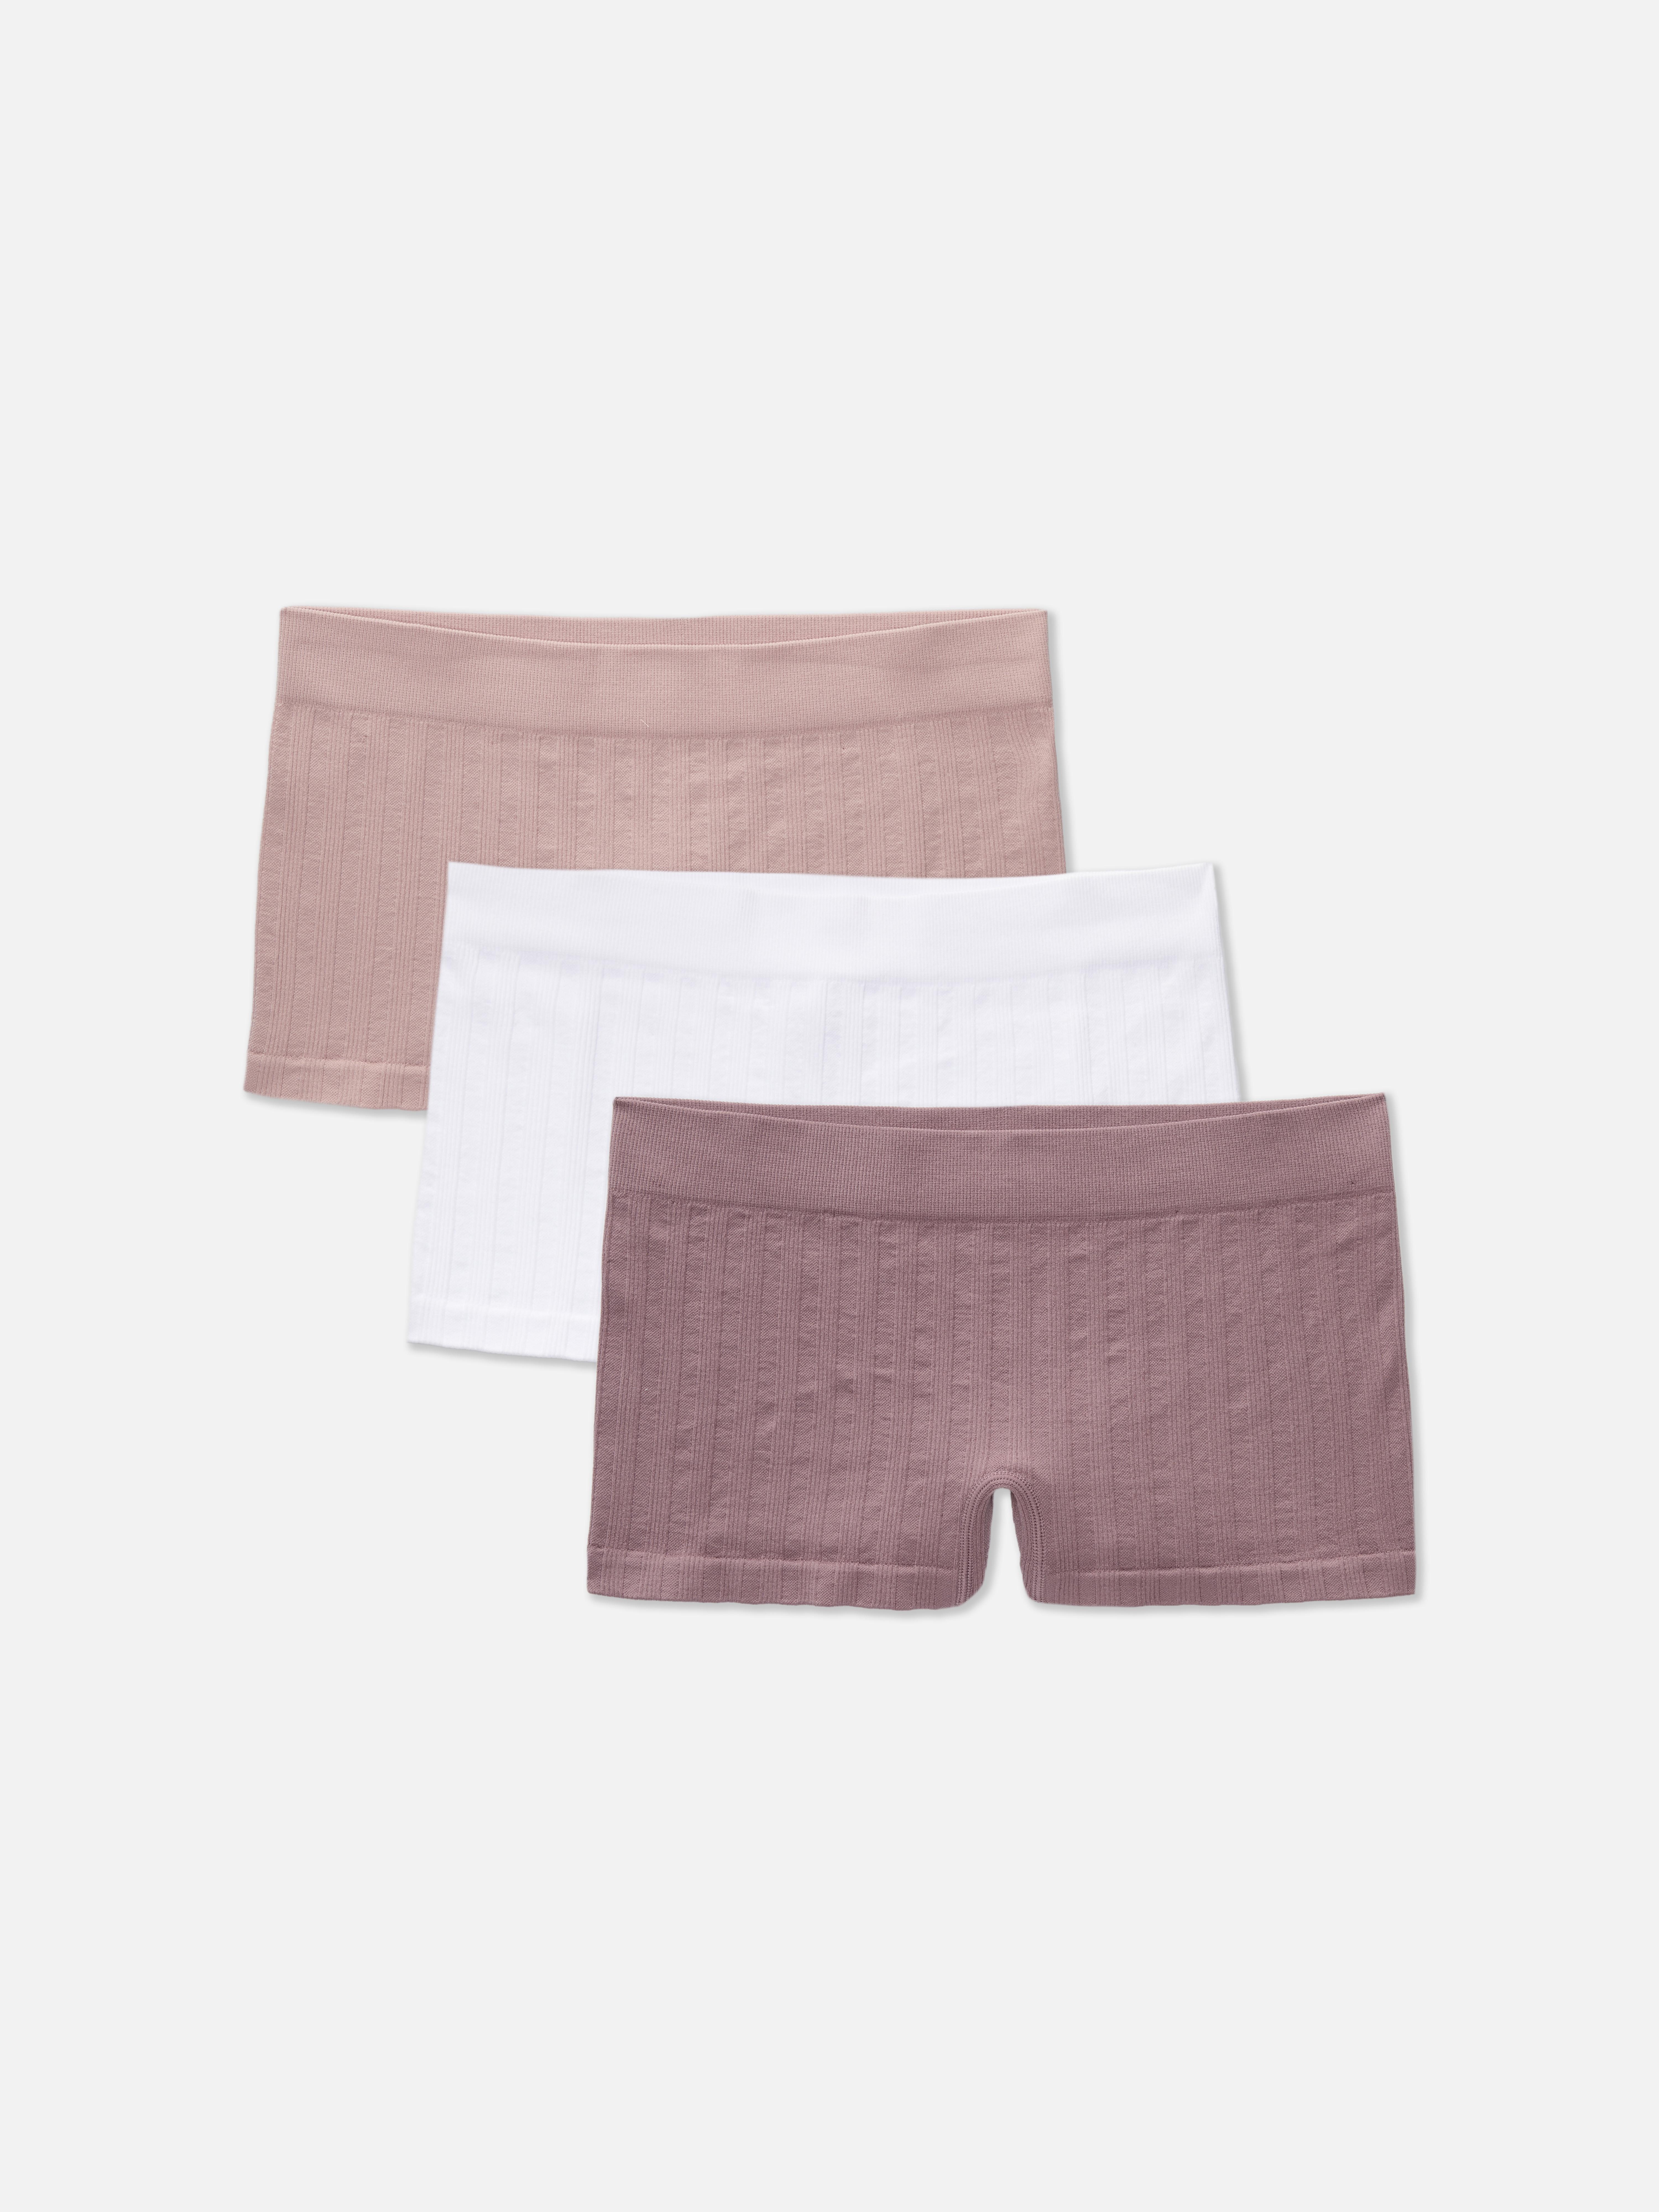 Primark underwear 3 Pack Seamfree Shorts Size XL 18/20